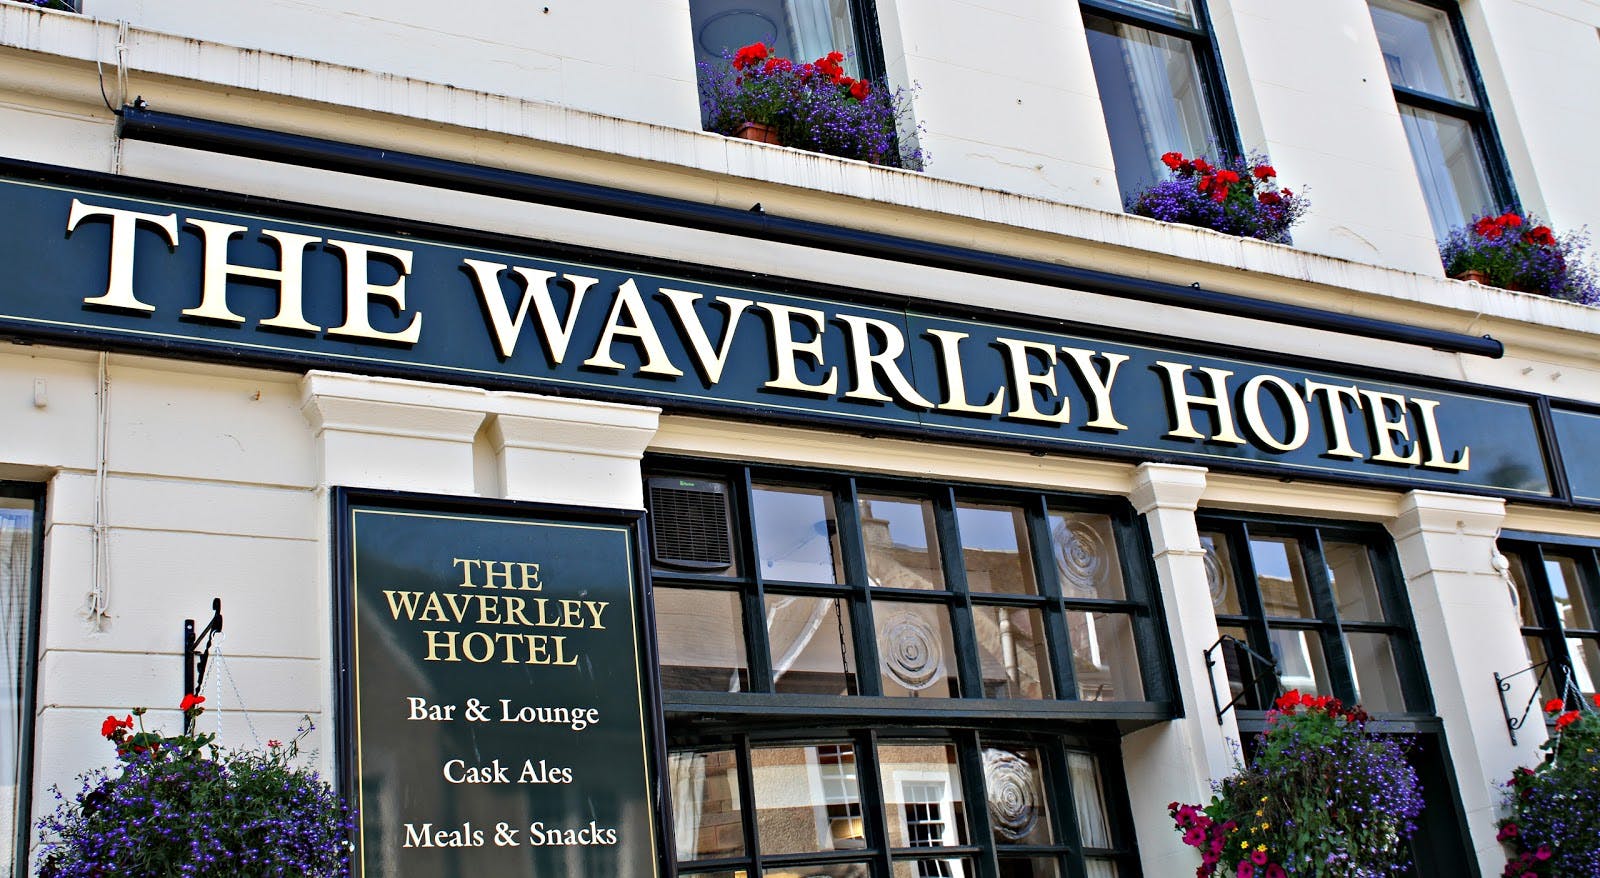 Image - The Waverley